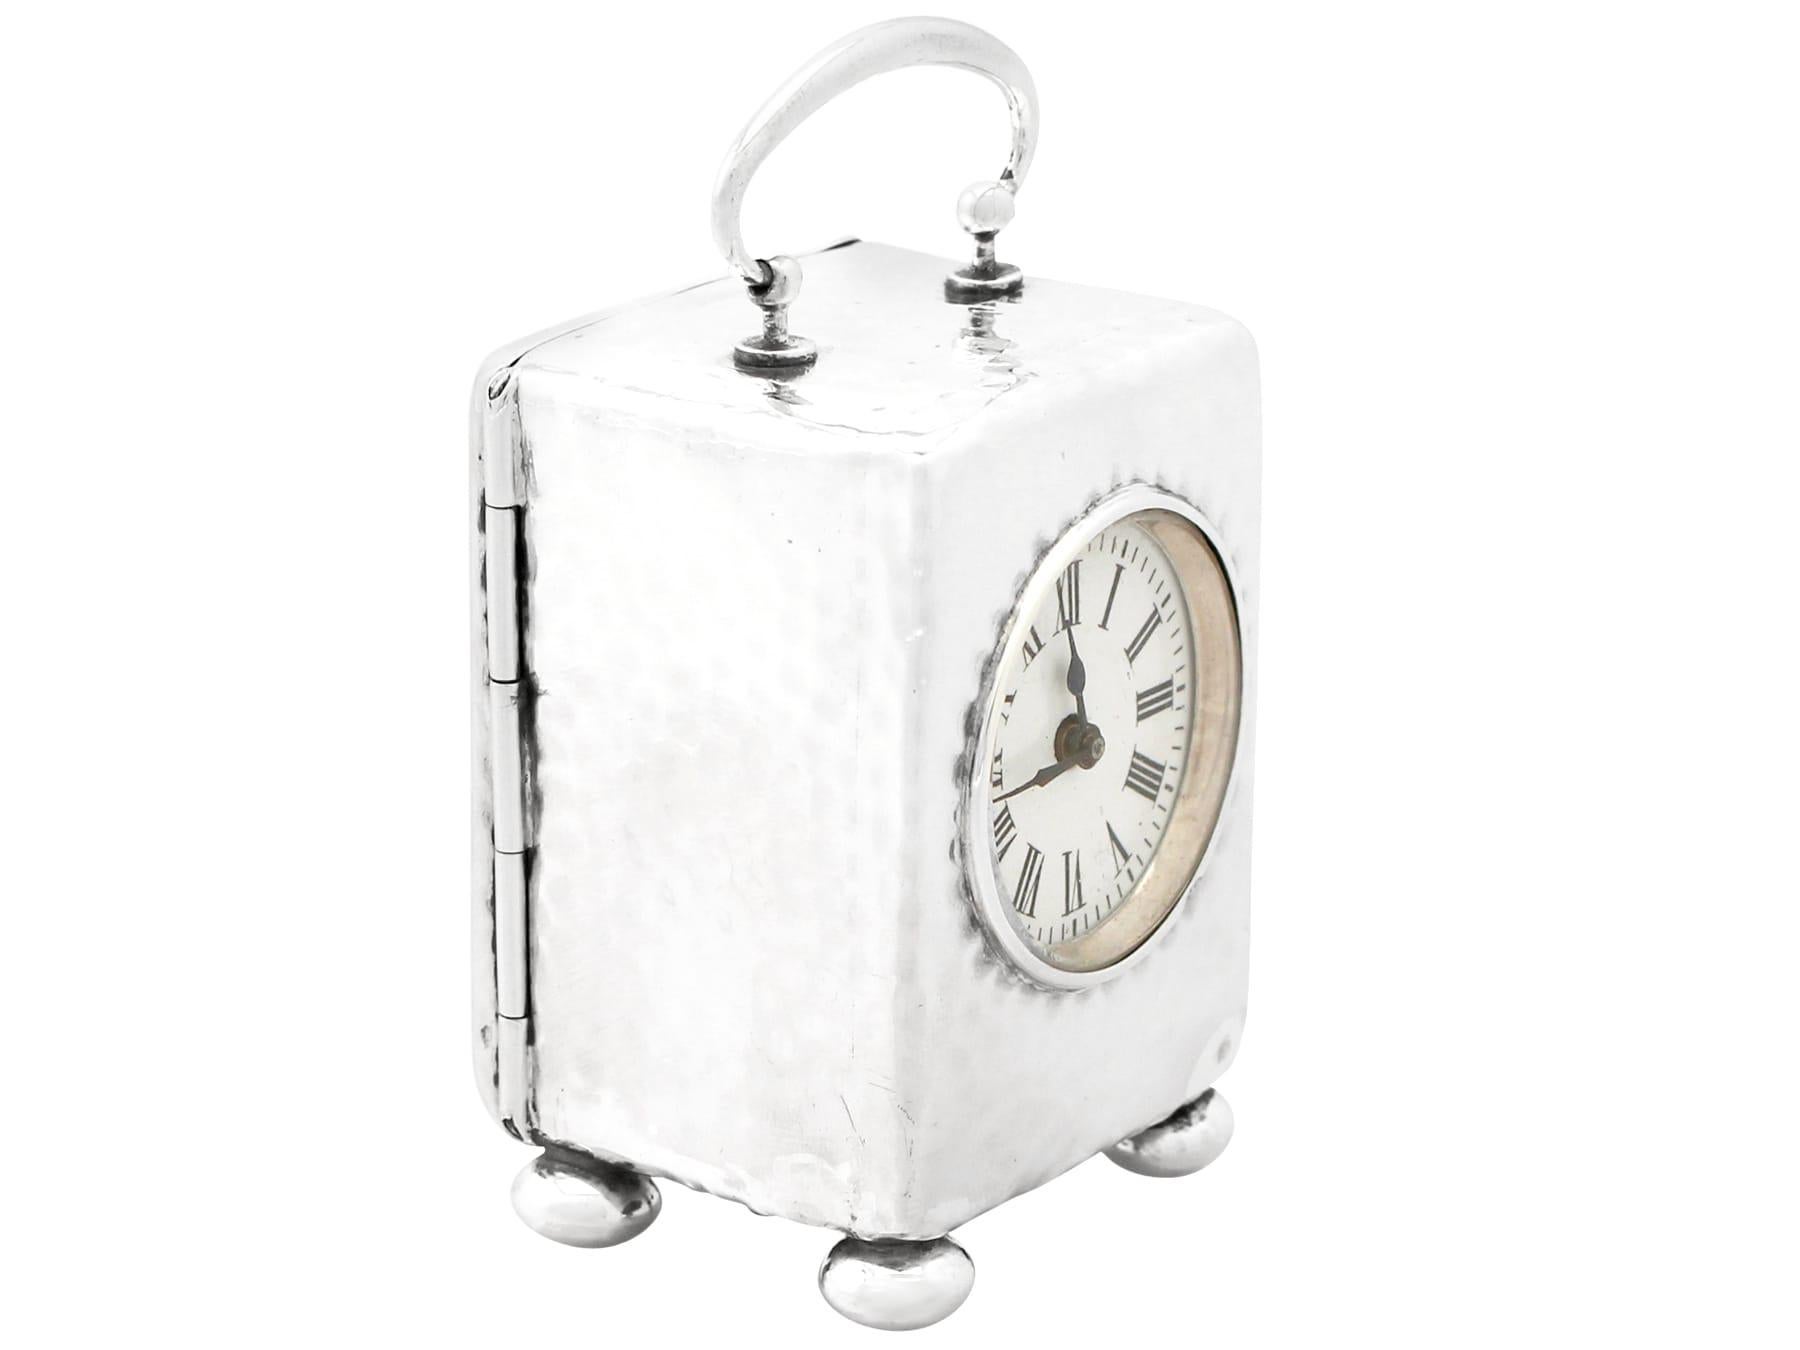 Eine feine und beeindruckende antike viktorianische englische Sterling-Silber Acht-Tage-Boudoir-Uhr; eine Ergänzung zu unserer Silber Zeitmesser Sammlung.

Diese feine antike viktorianische Sterling-Silber Boudoir Uhr hat eine schlichte